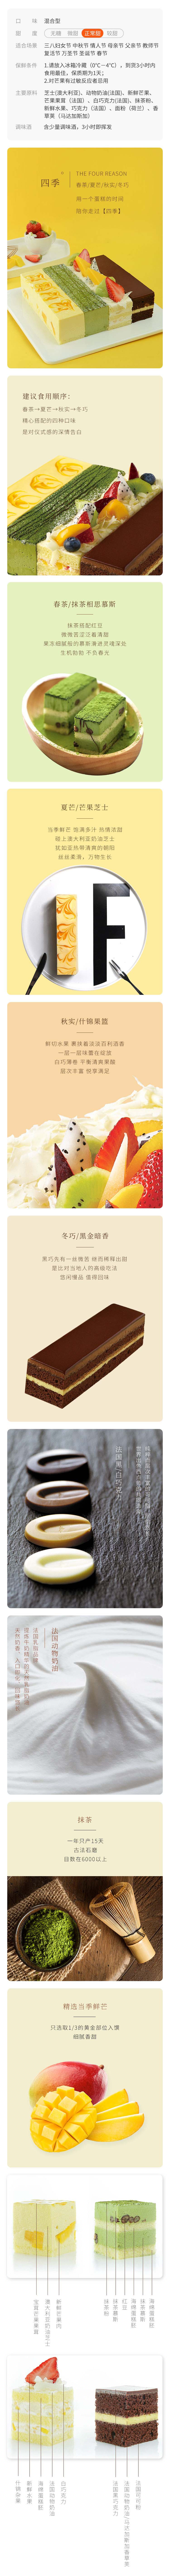 壹点壹客 【深圳馆】四季-巧克力抹茶芝士水果奶油生日蛋糕